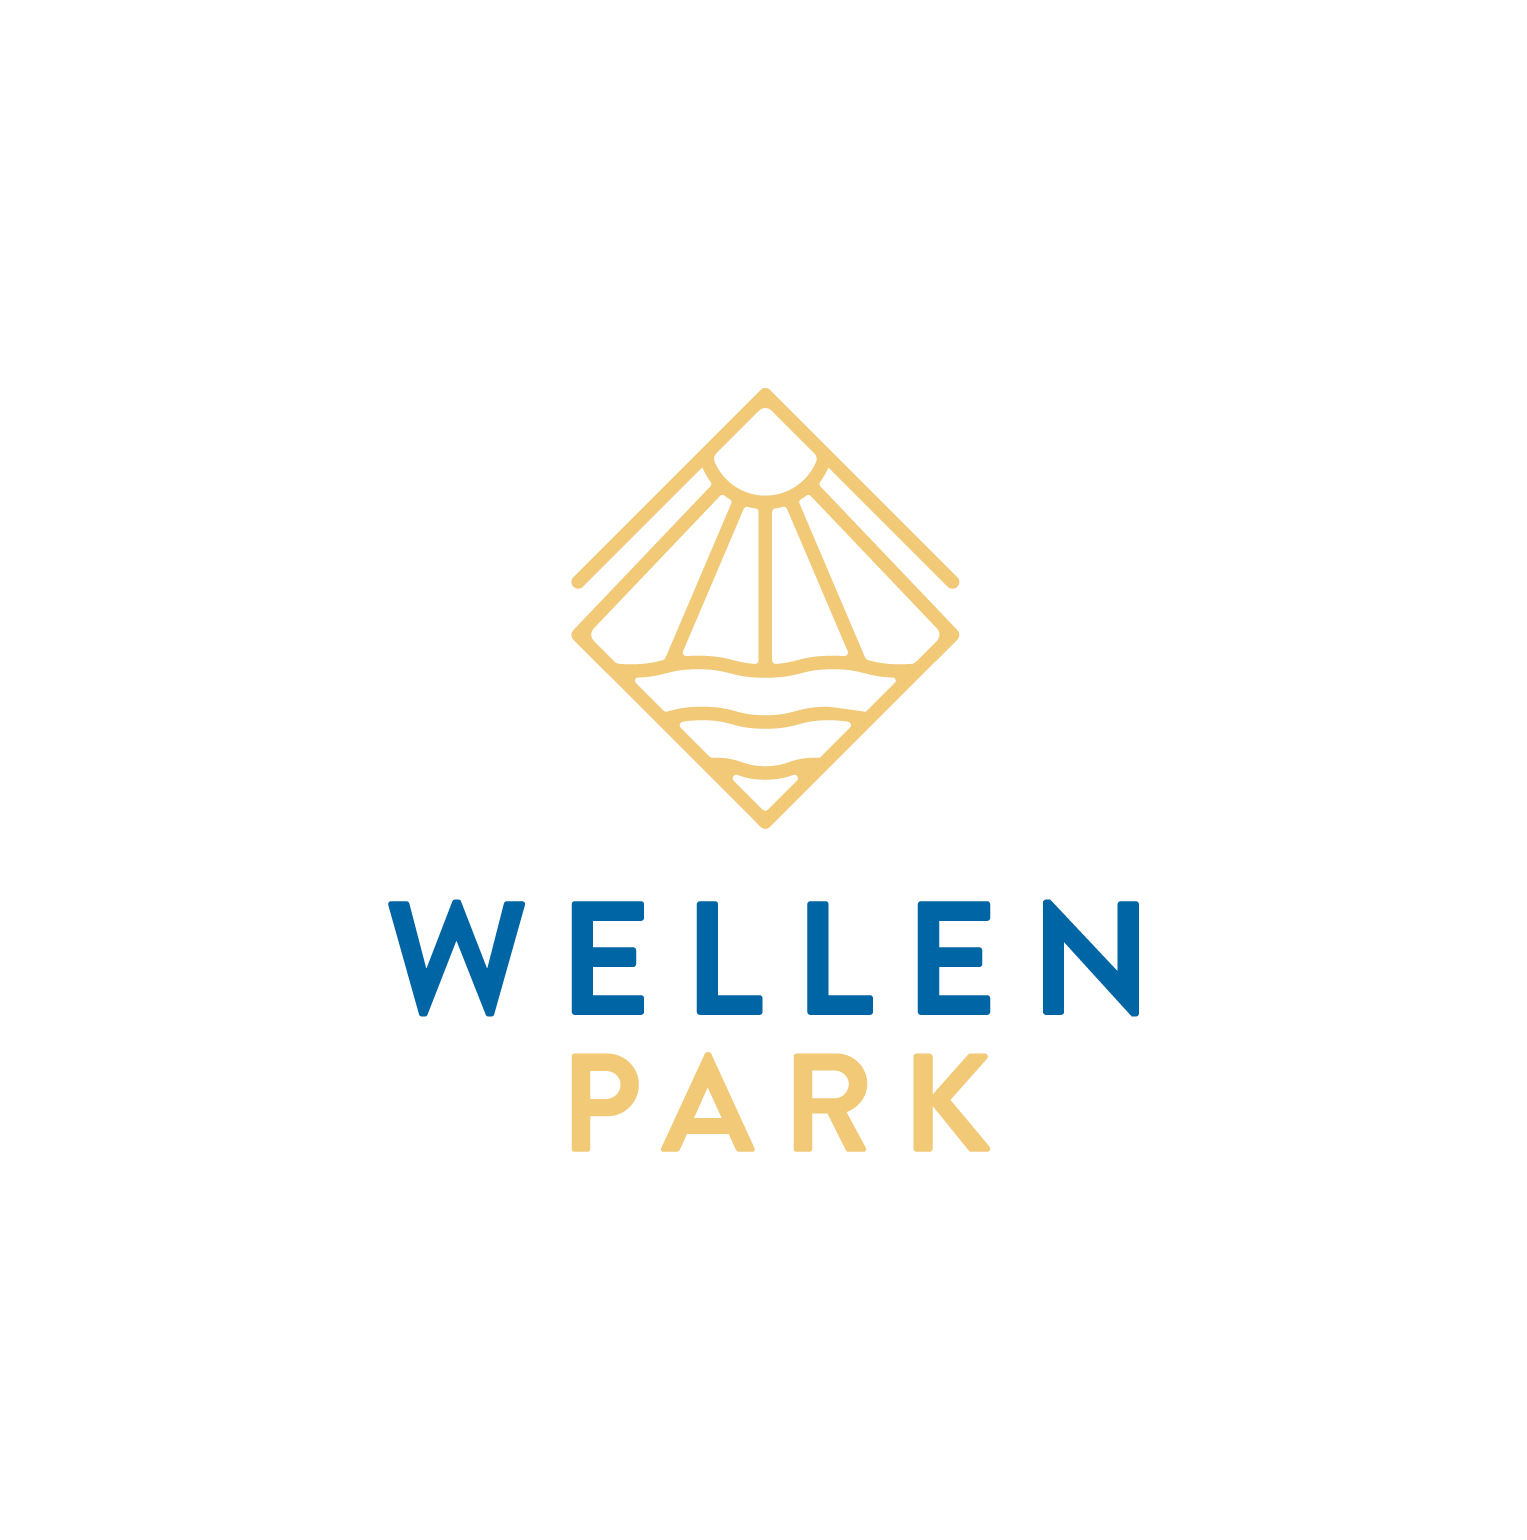 Wellen_Park_Primary_Vert_PosRGB